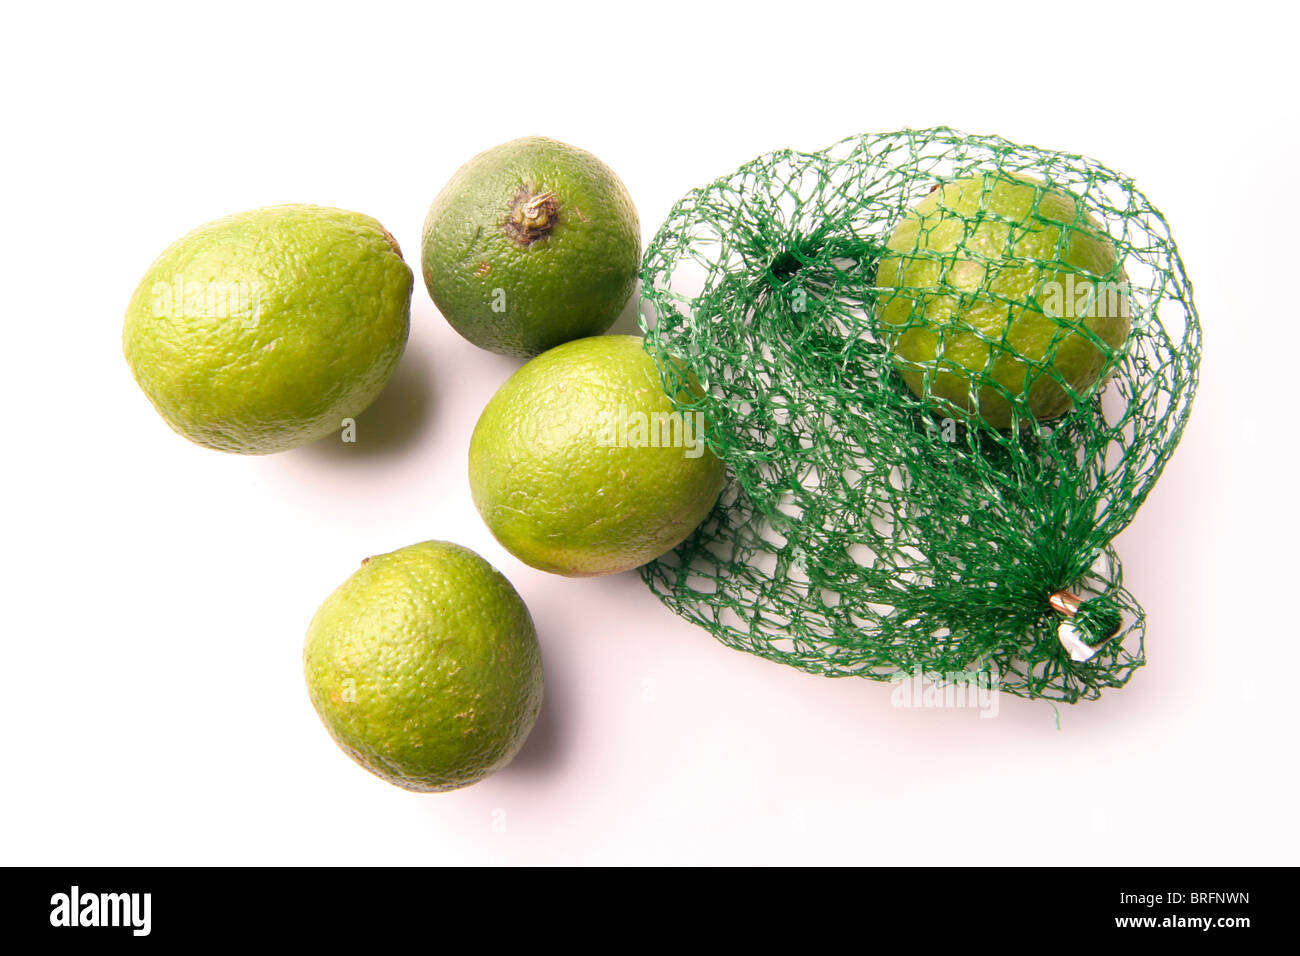 Limette (Citrus latifolia) Foto de stock